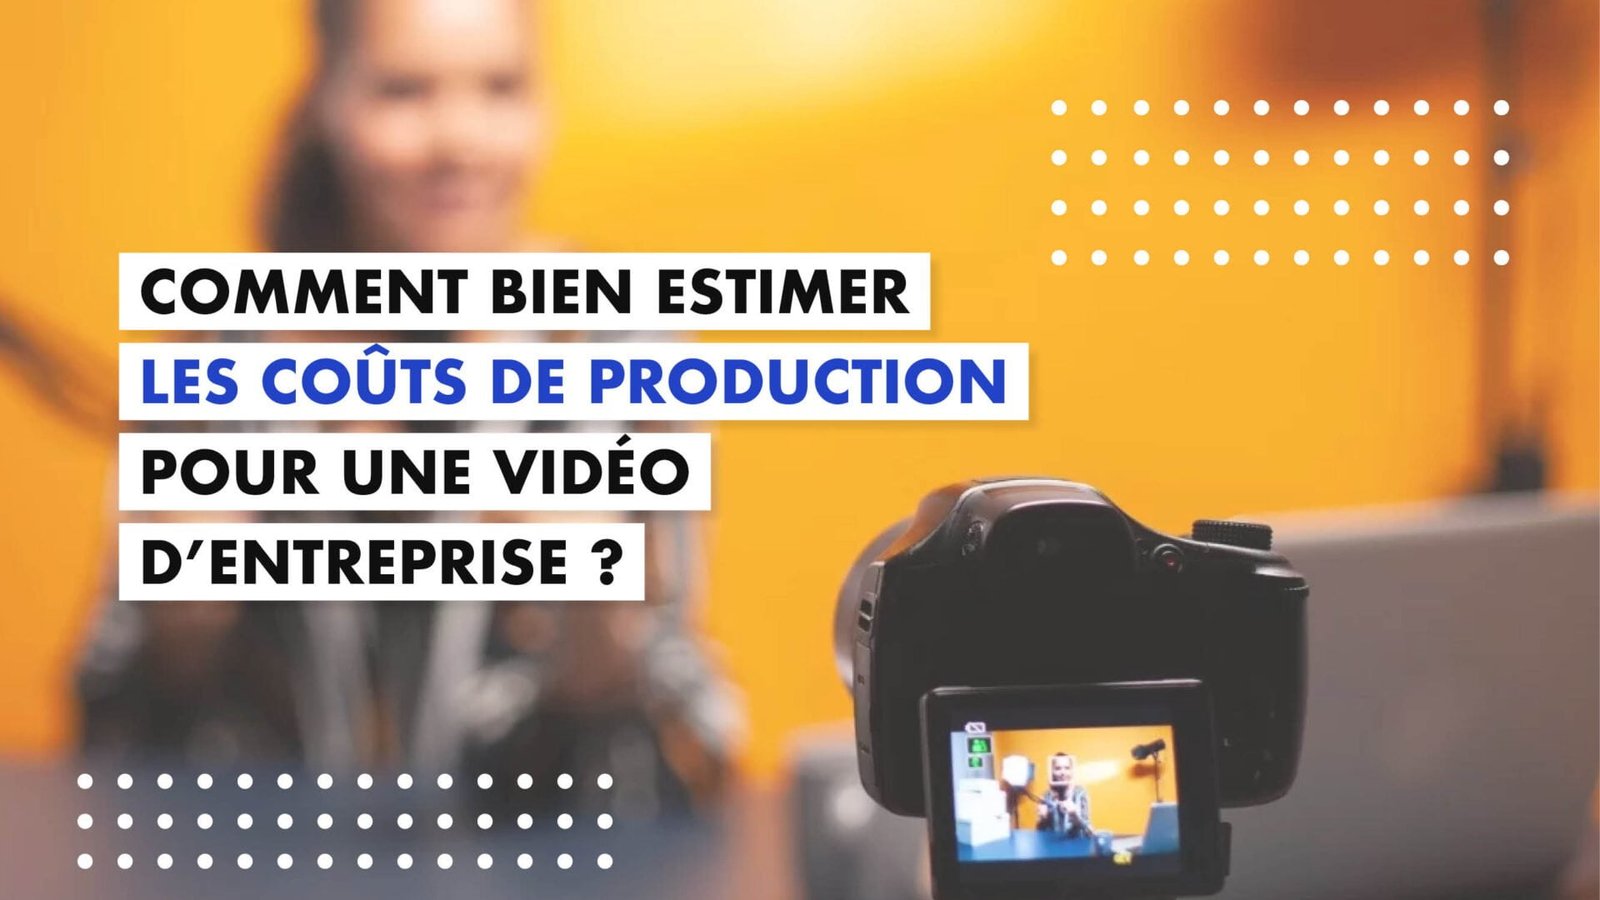 Comment bien estimer les coûts de production pour une vidéo d'entreprise?